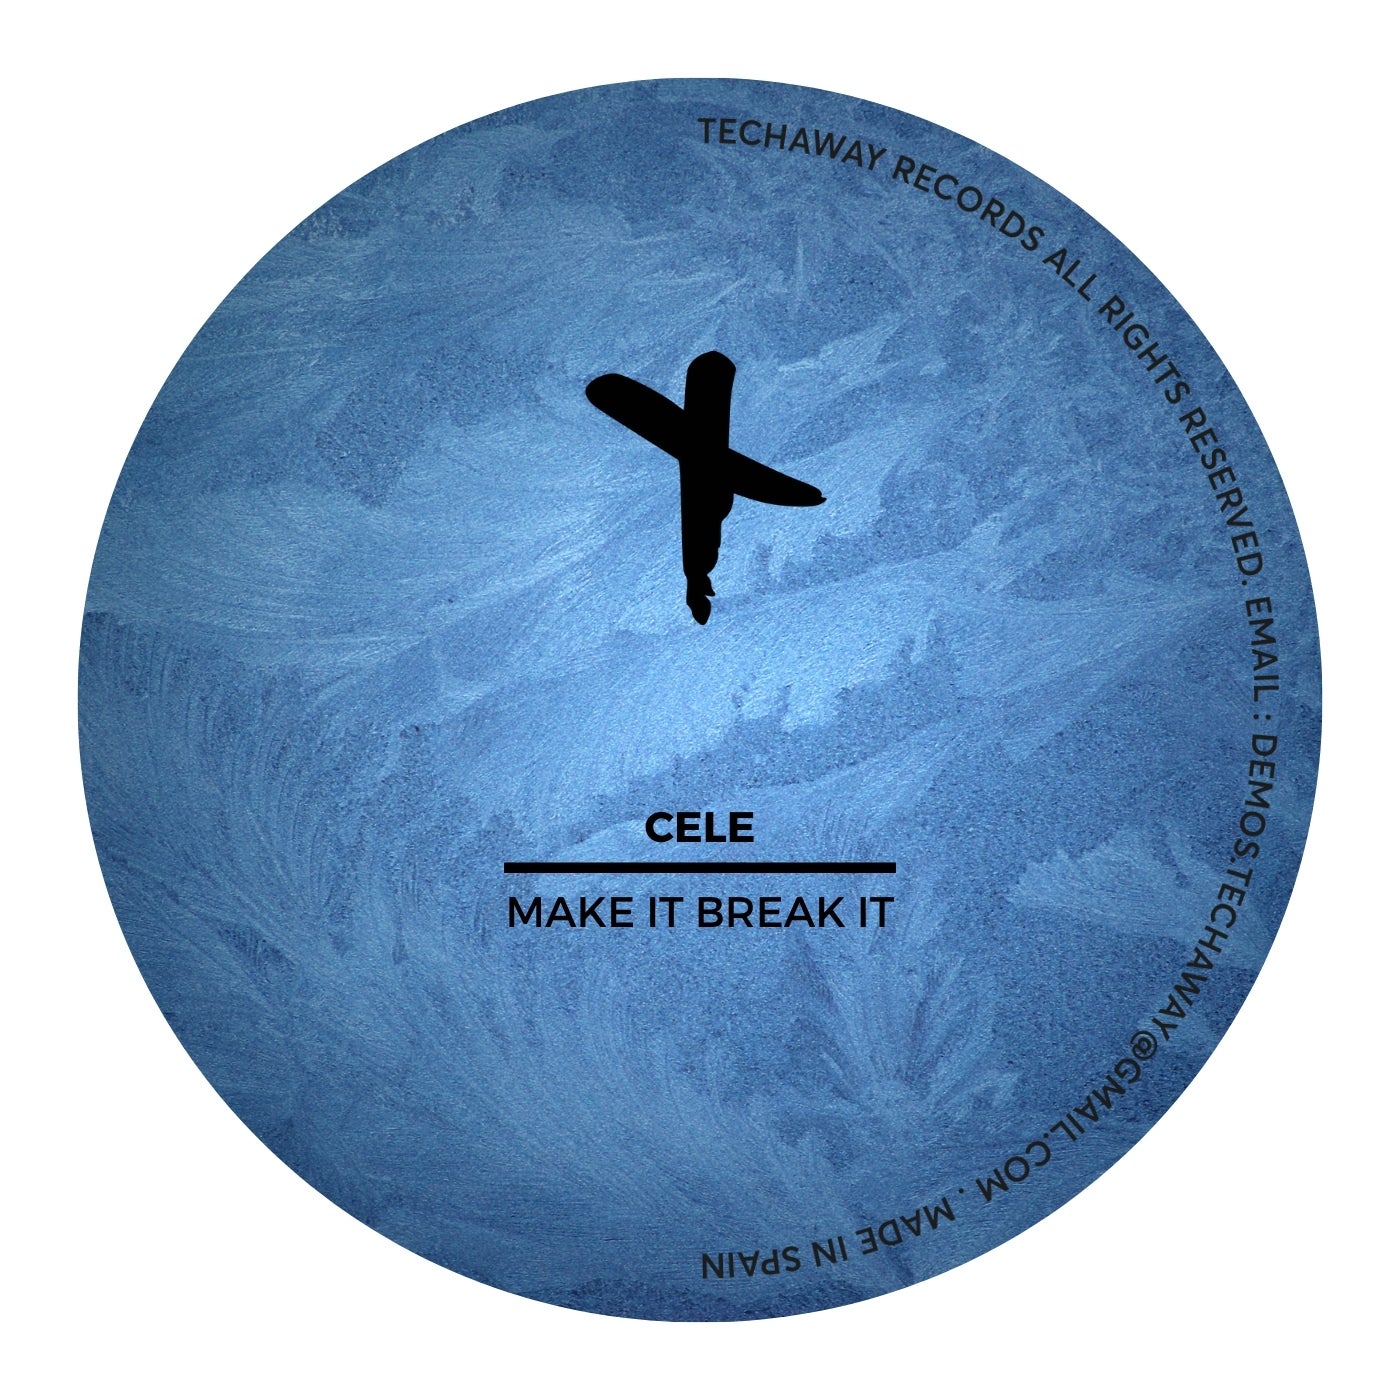 Make It Break It Original Mix By Cele On Beatport